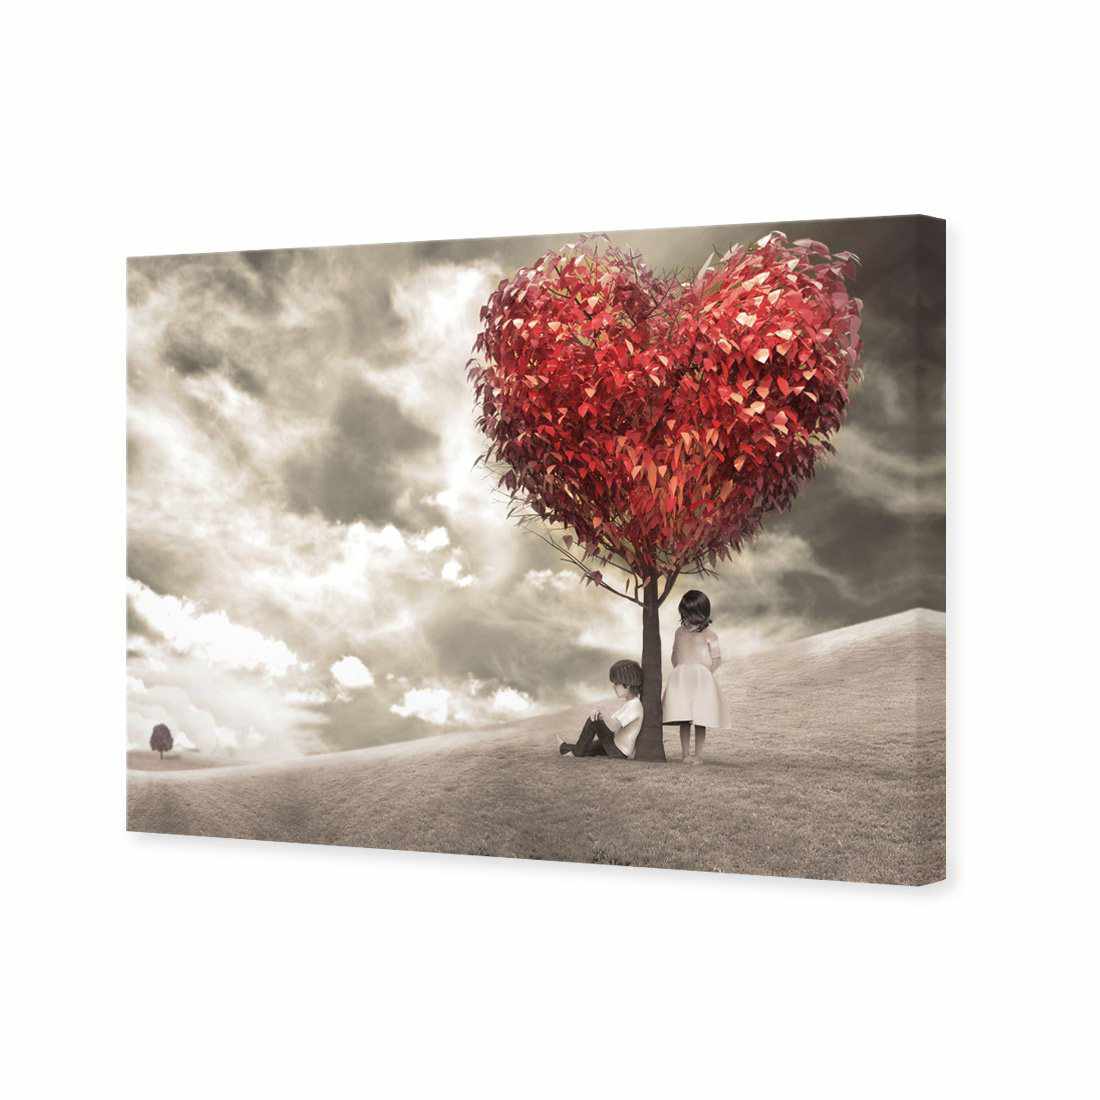 The Heart Tree Canvas Art-Canvas-Wall Art Designs-45x30cm-Canvas - No Frame-Wall Art Designs